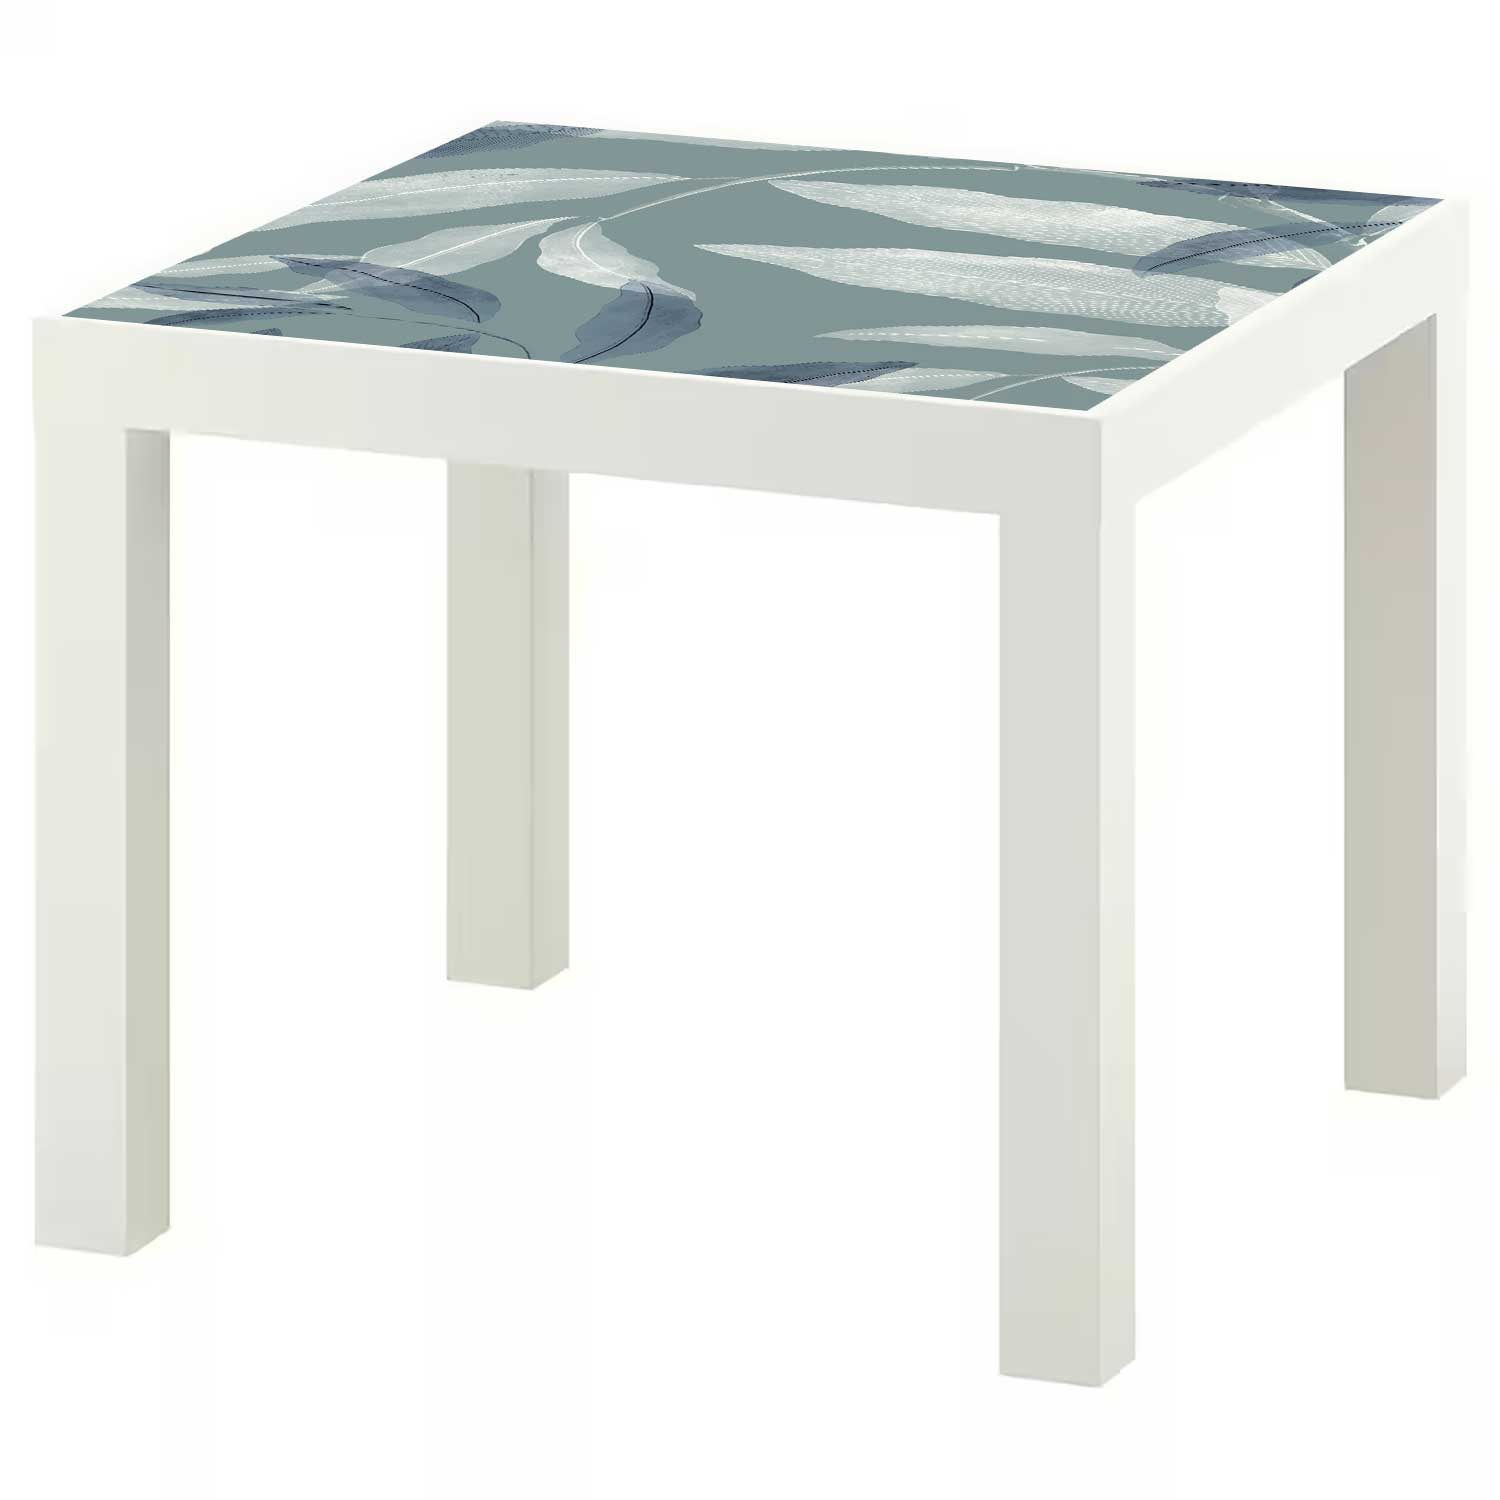 Möbelfolie für IKEA Lack Tisch 55x55 cm 'Pflanzenblätter'